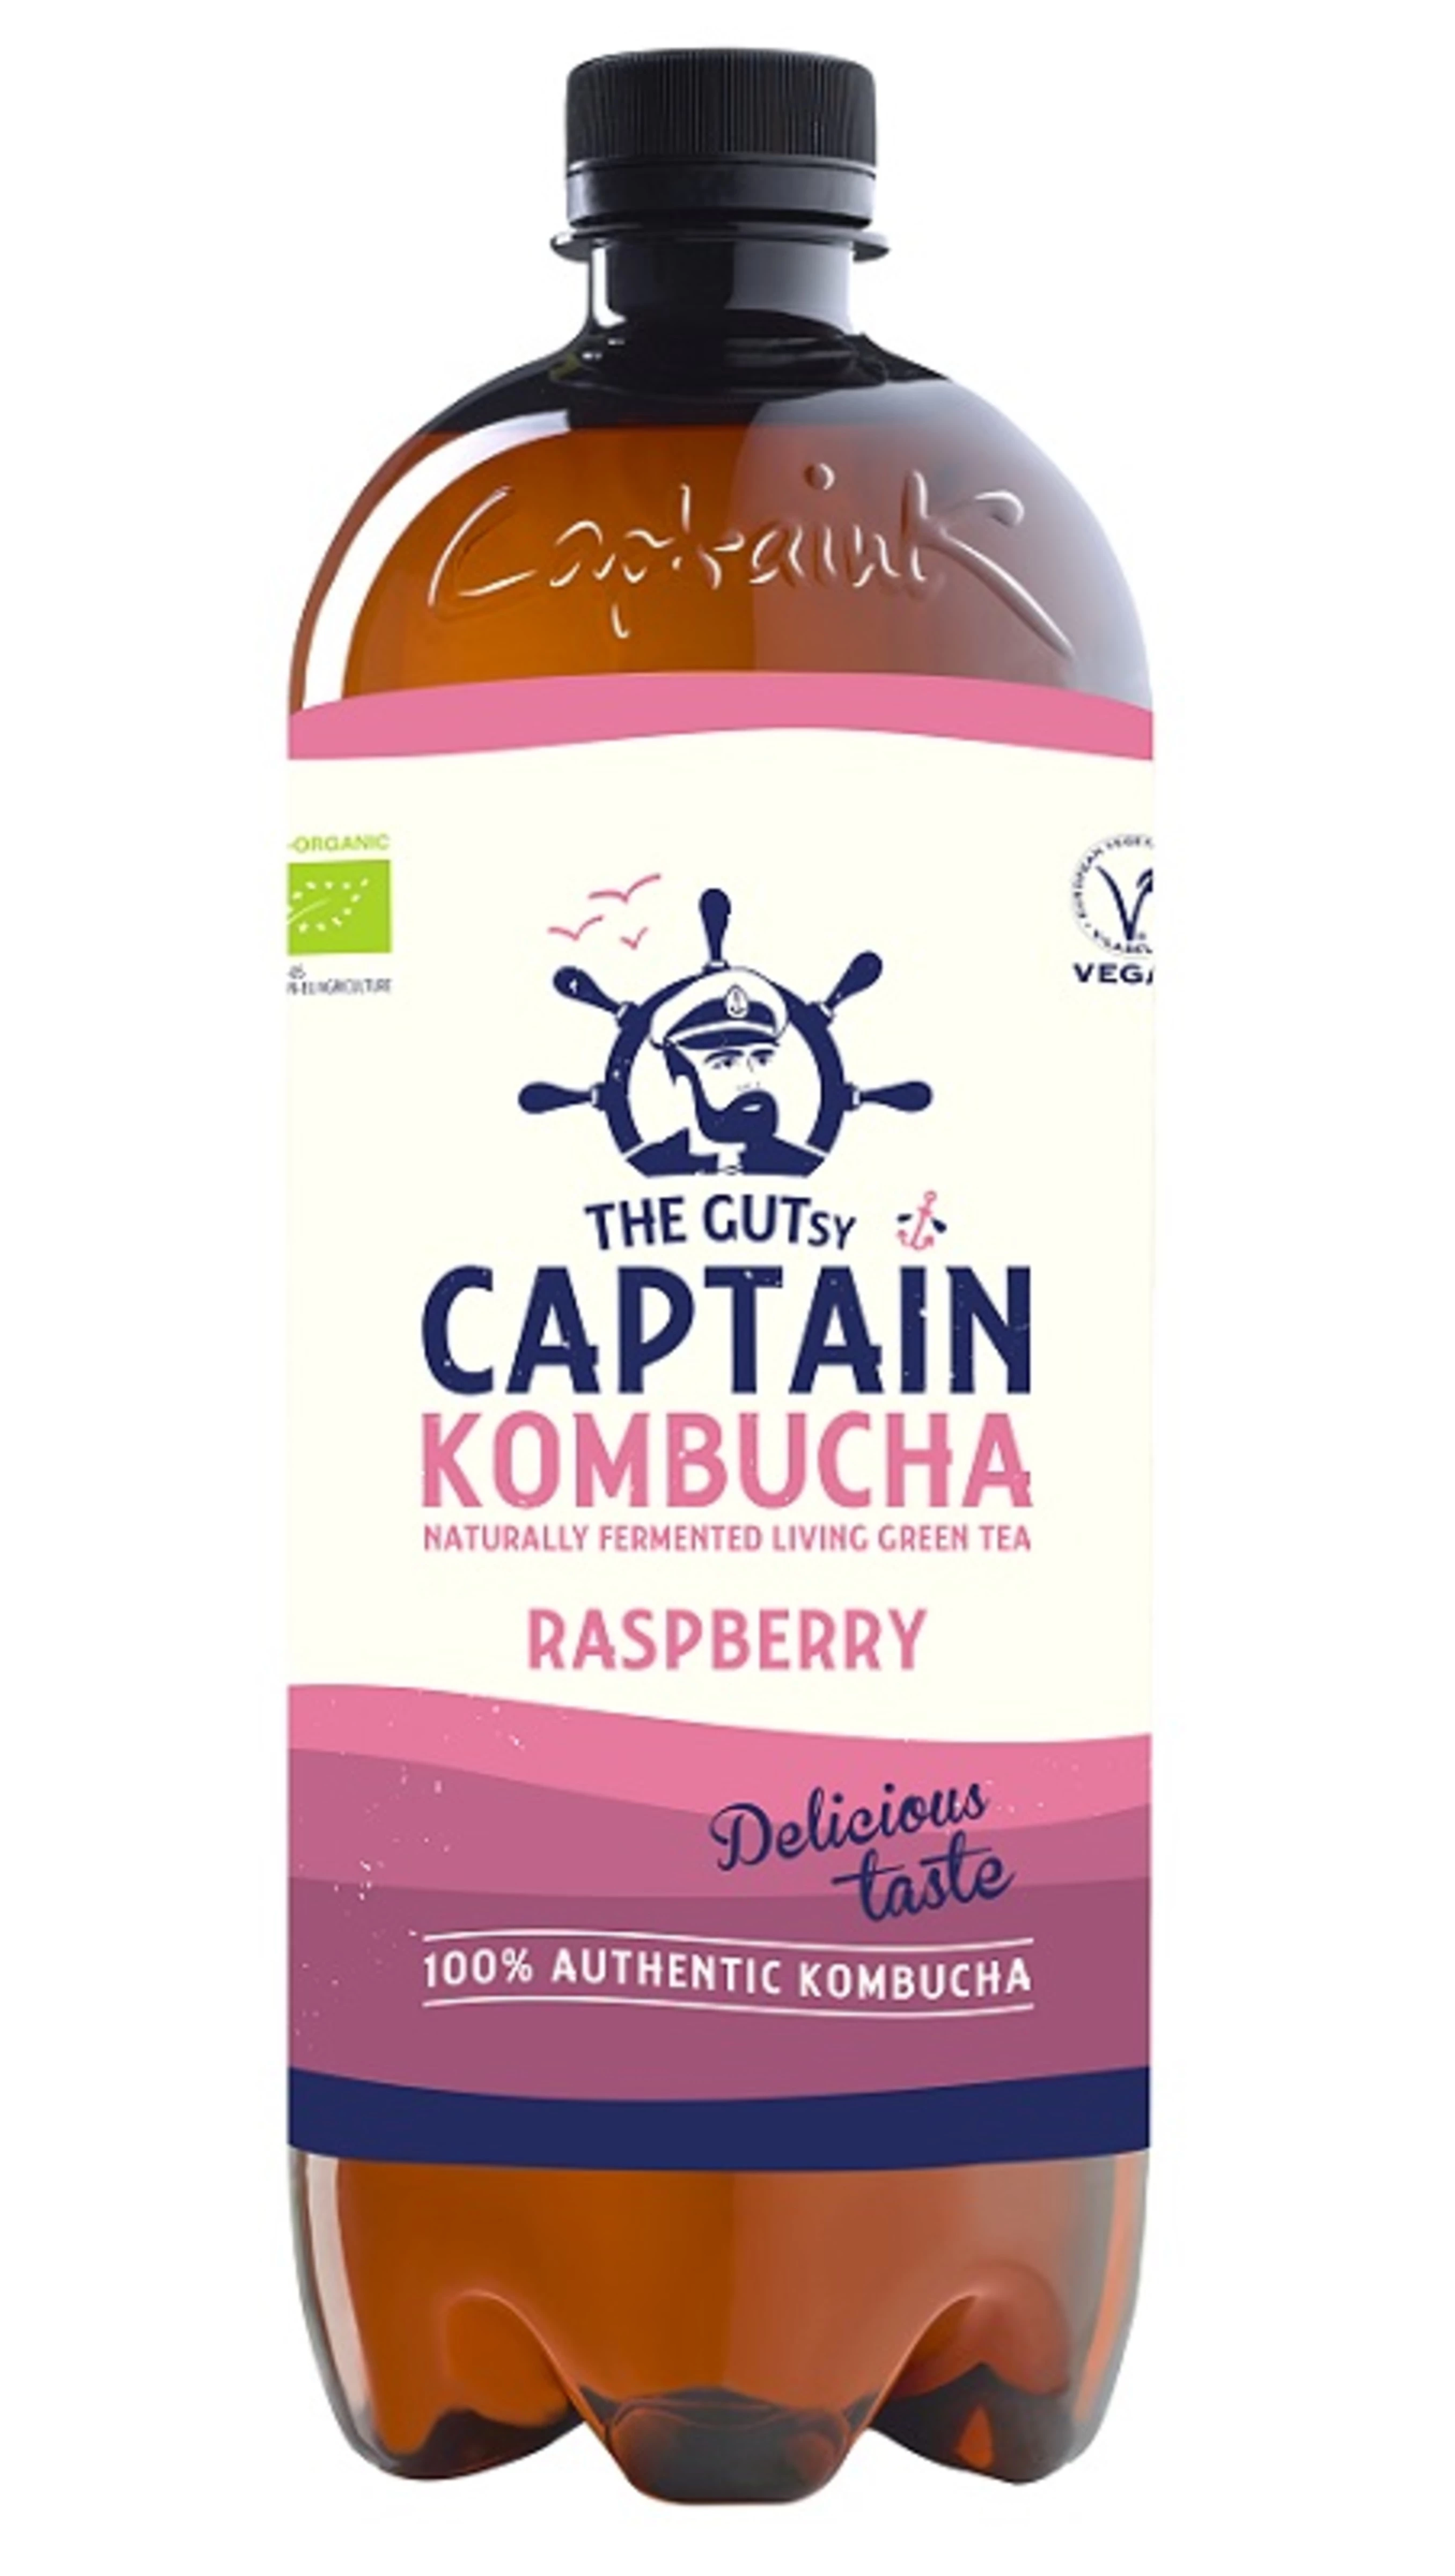 ऑर्गेनिक कोम्बुचा रास्पबेरी किण्वित प्राकृतिक पेय 1एल - साहसी कप्तान